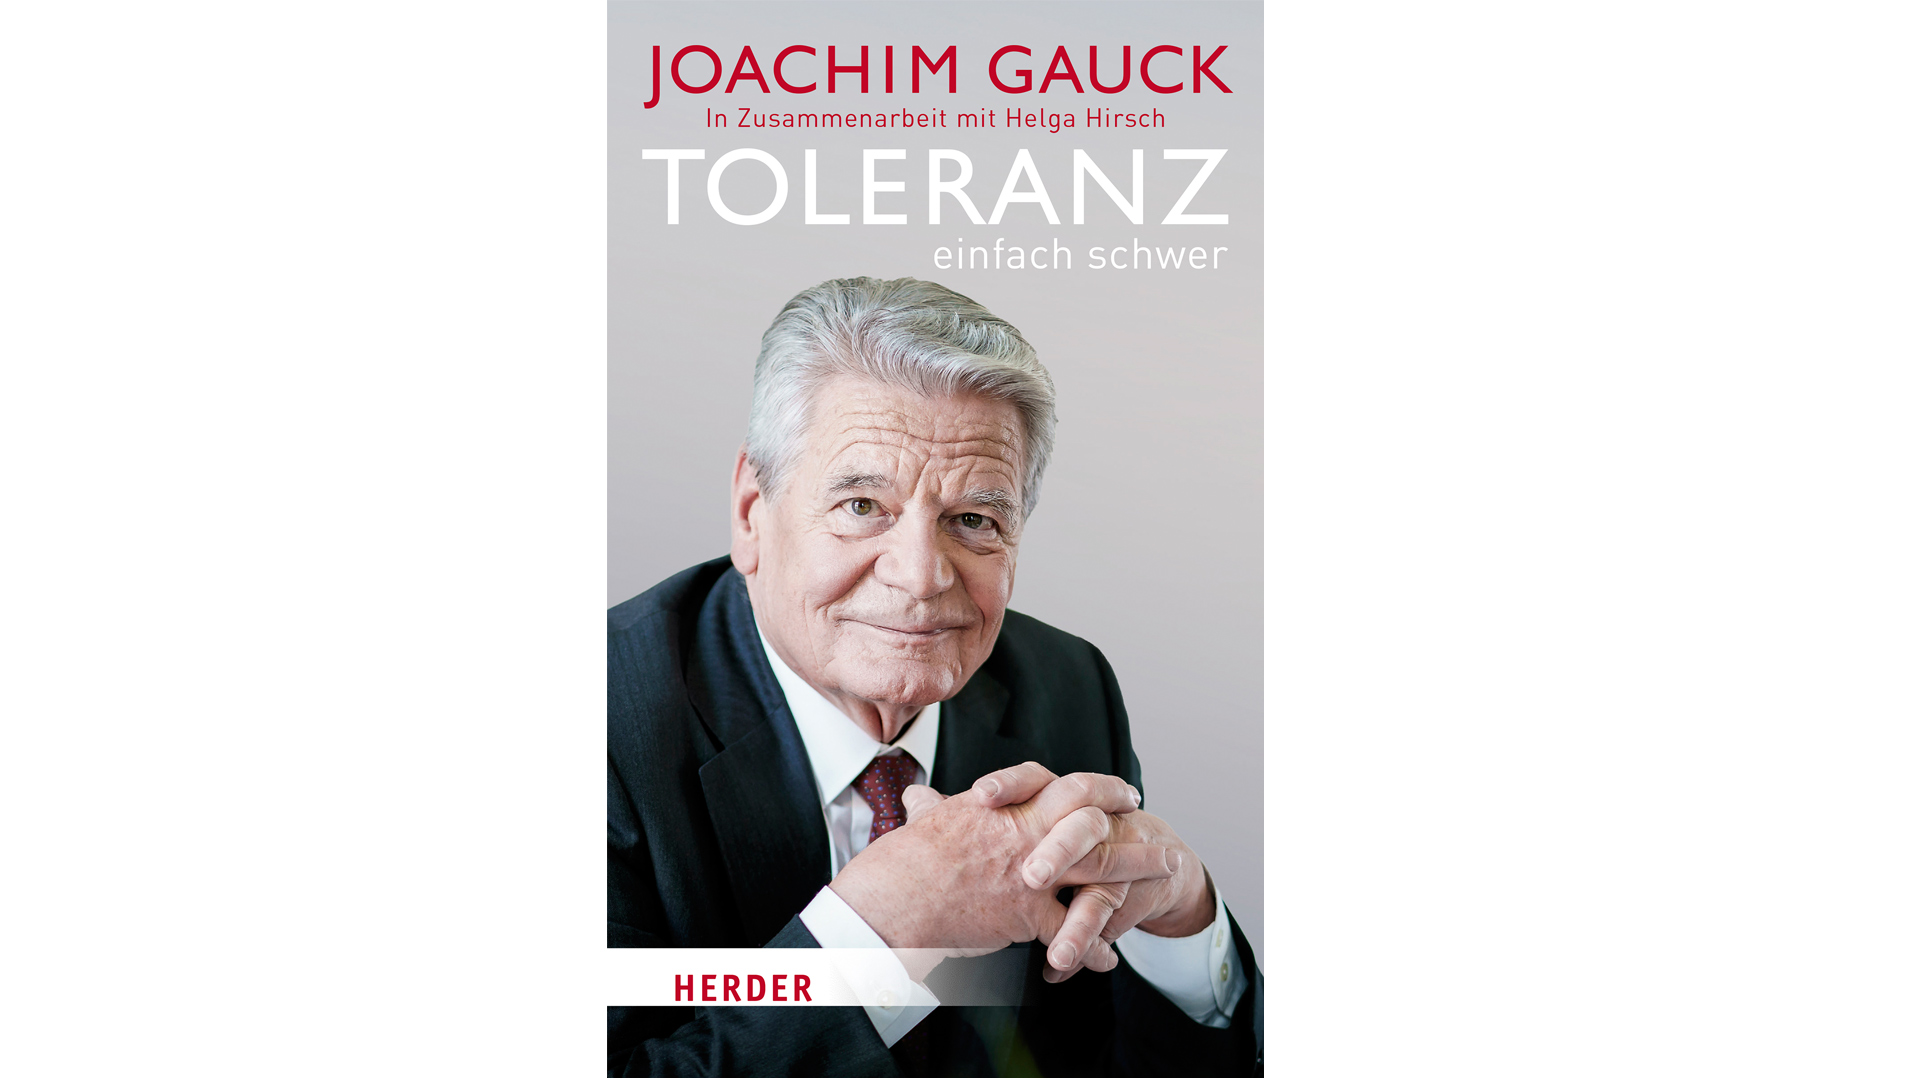 Joachim Gauck hat sich in seinem neuesten Buch mit dem Thema Toleranz beschäftigt